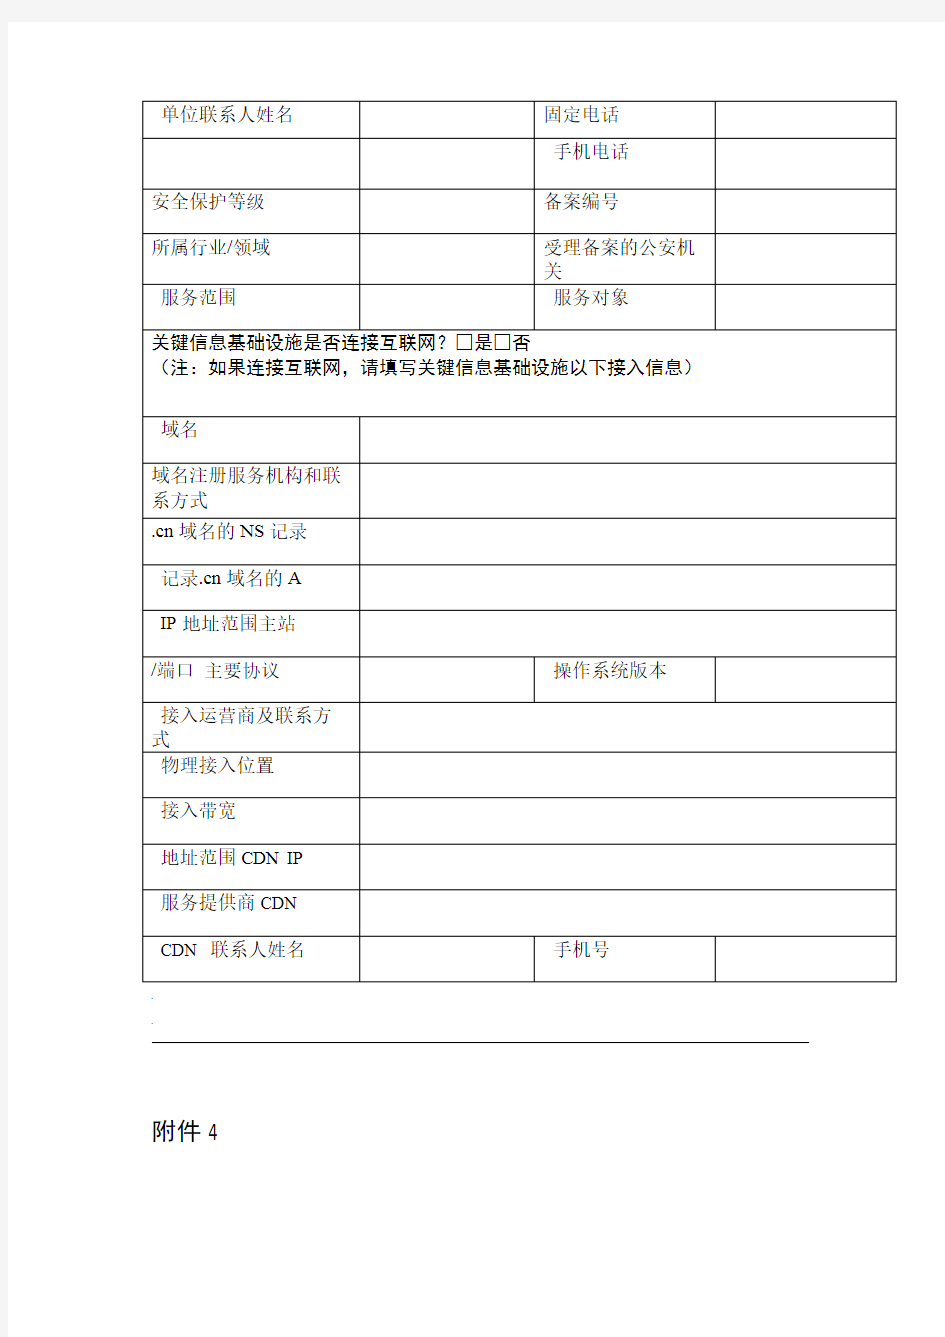 表格关于印发2017年广东公安机关网络安全执法检查工作方案的通知